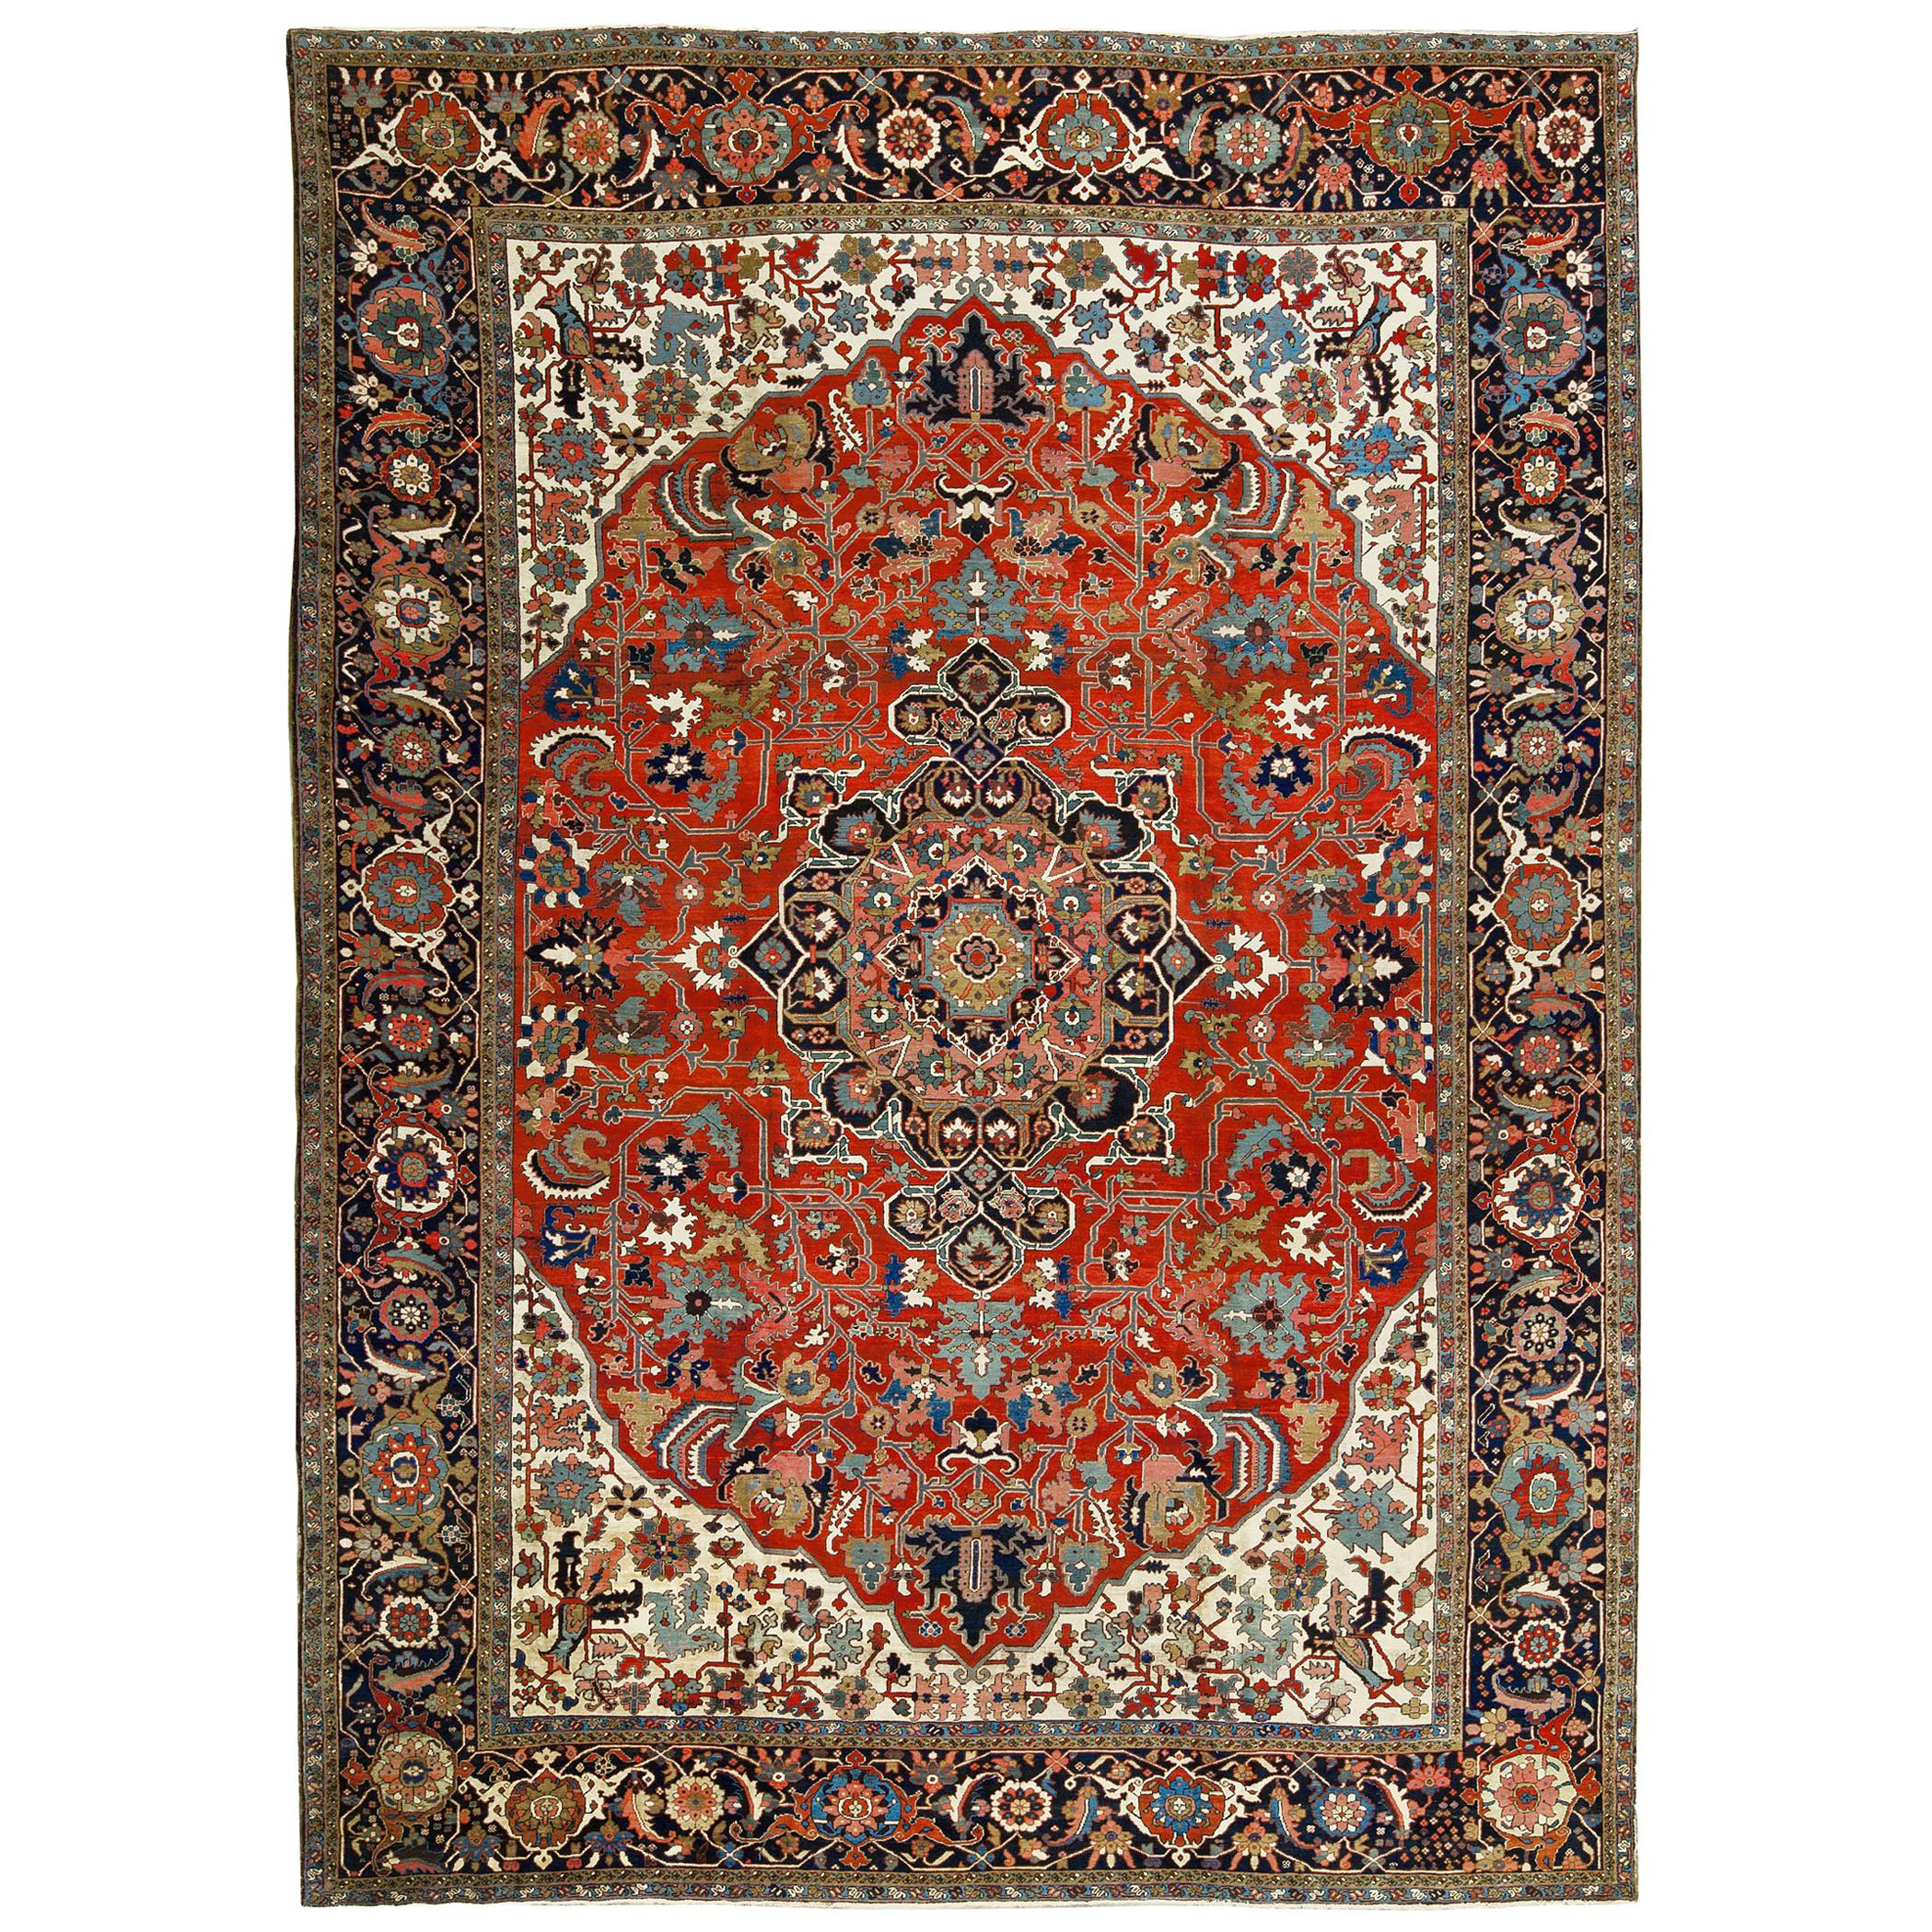 Antique Heriz Serapi Rug Carpet, circa 1890